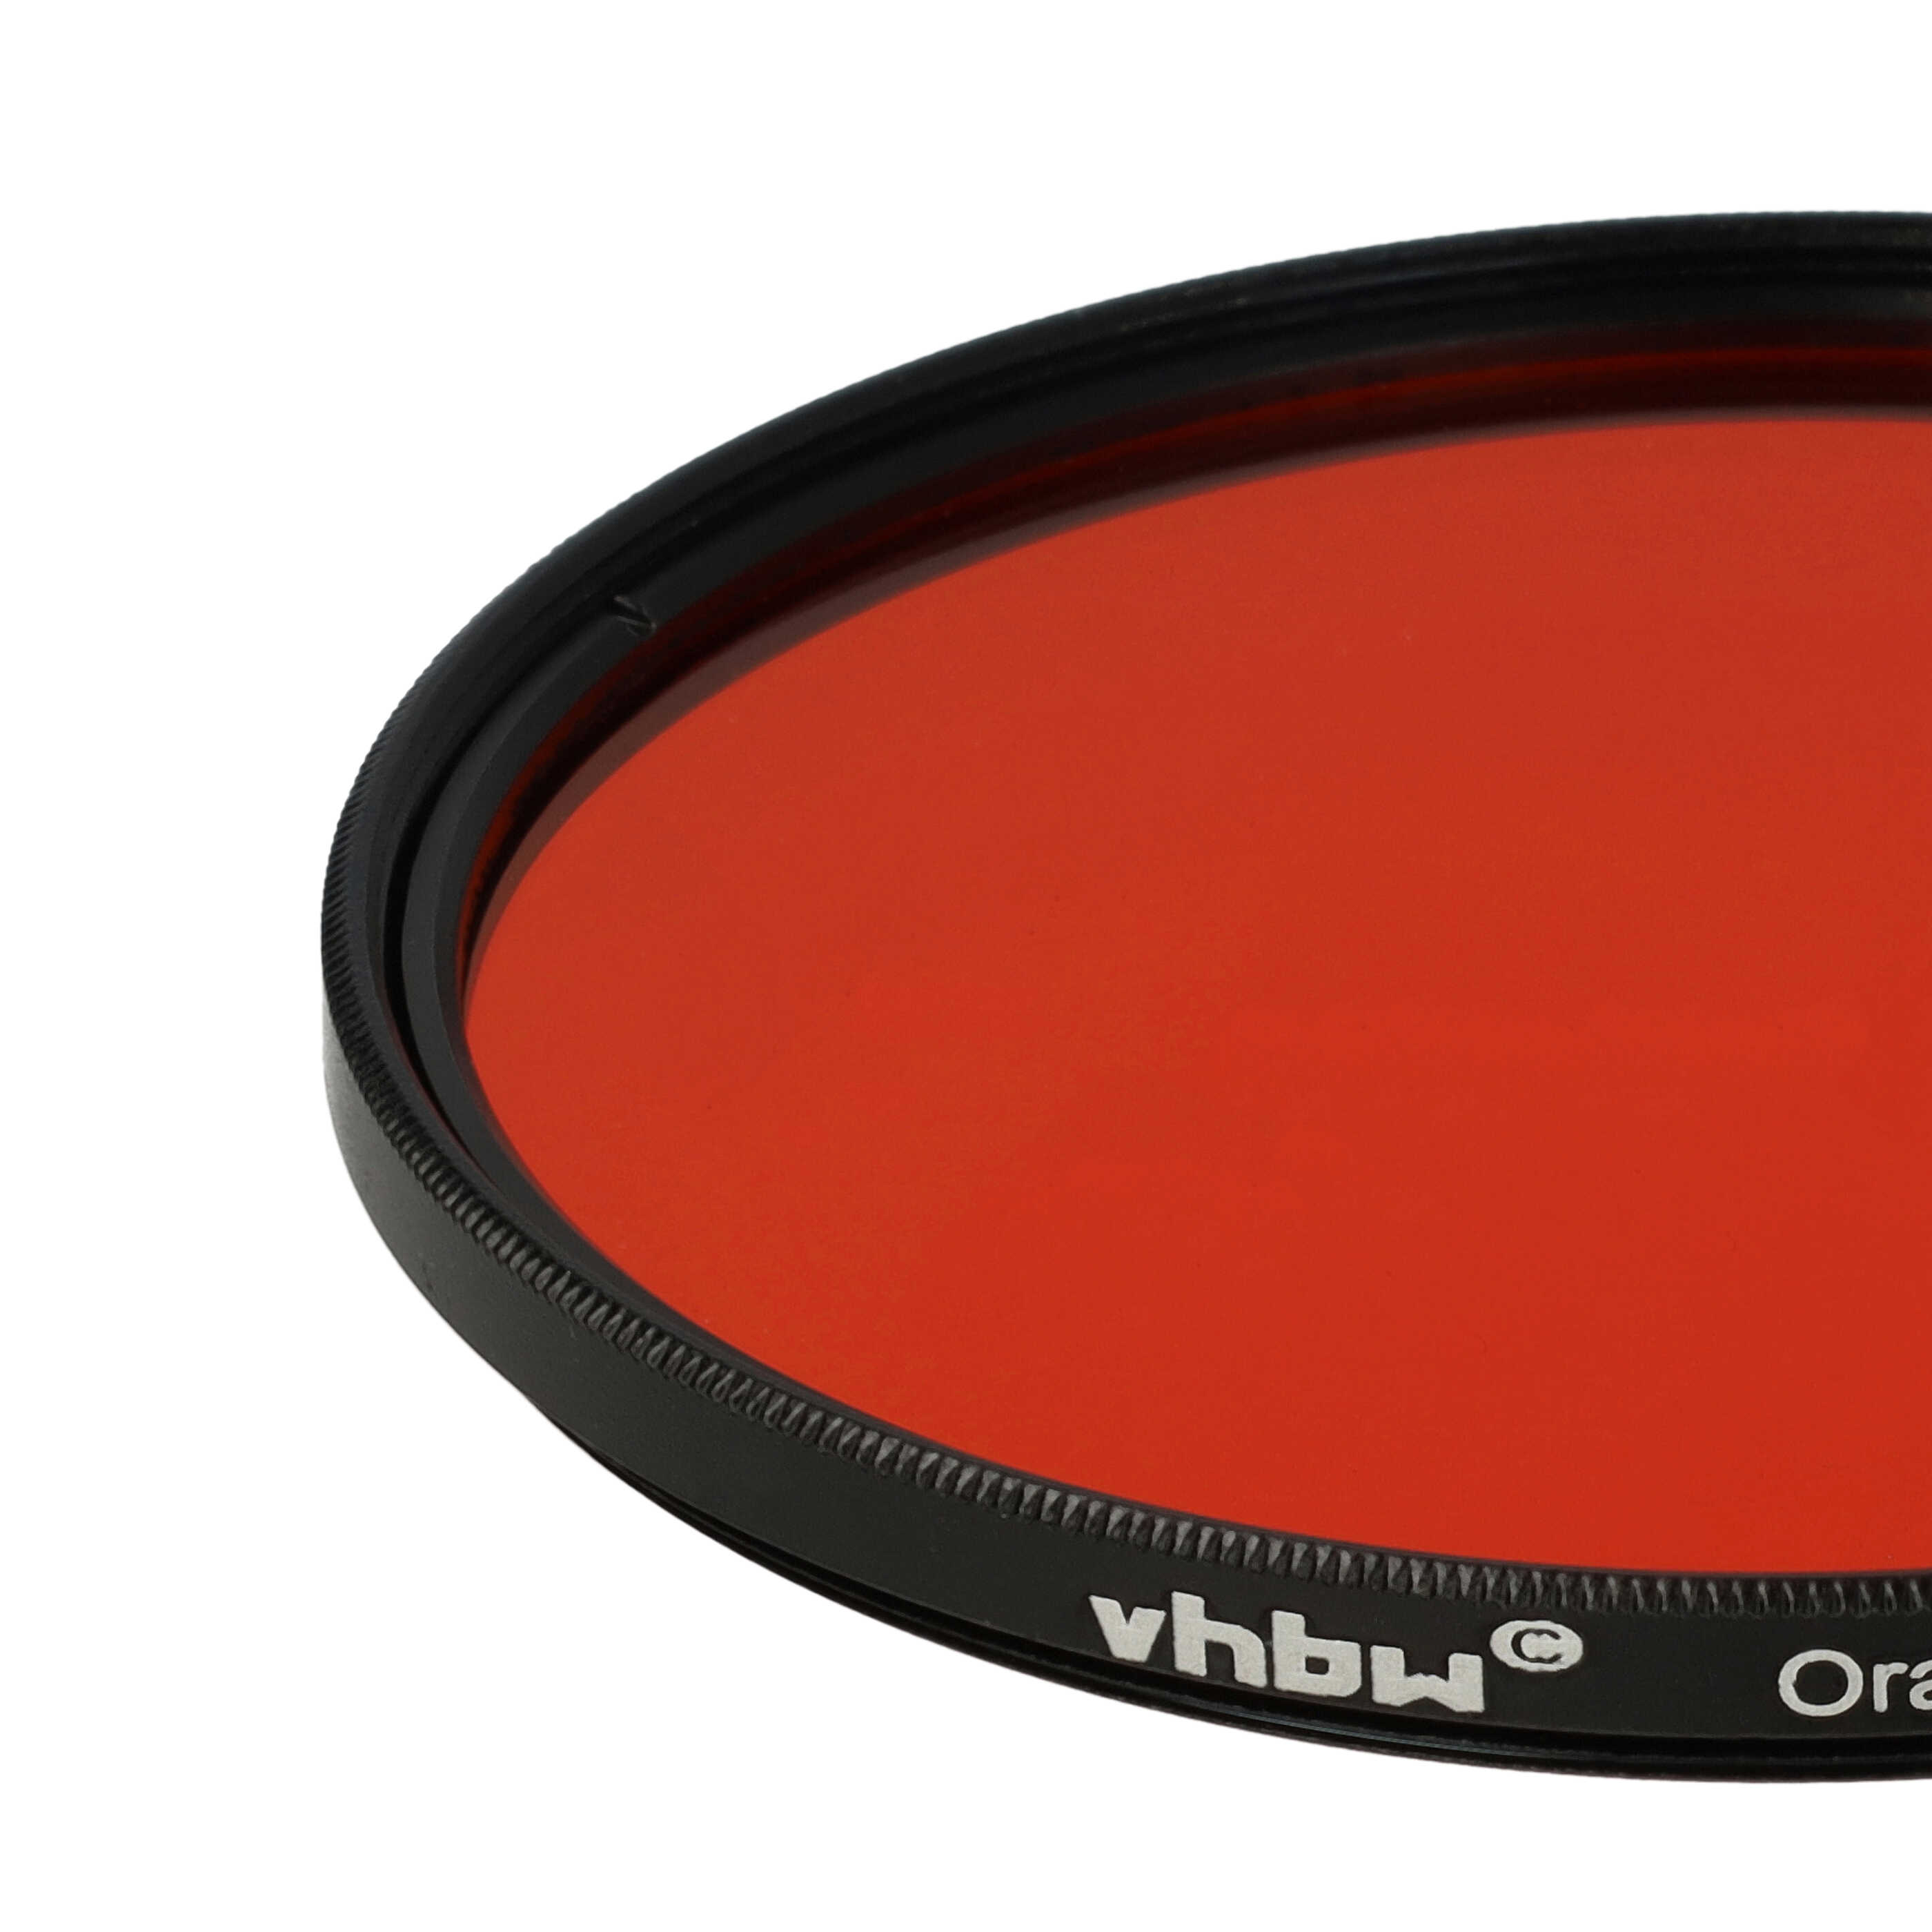 Filtro de color para objetivo de cámara con rosca de filtro de 72 mm - Filtro naranja